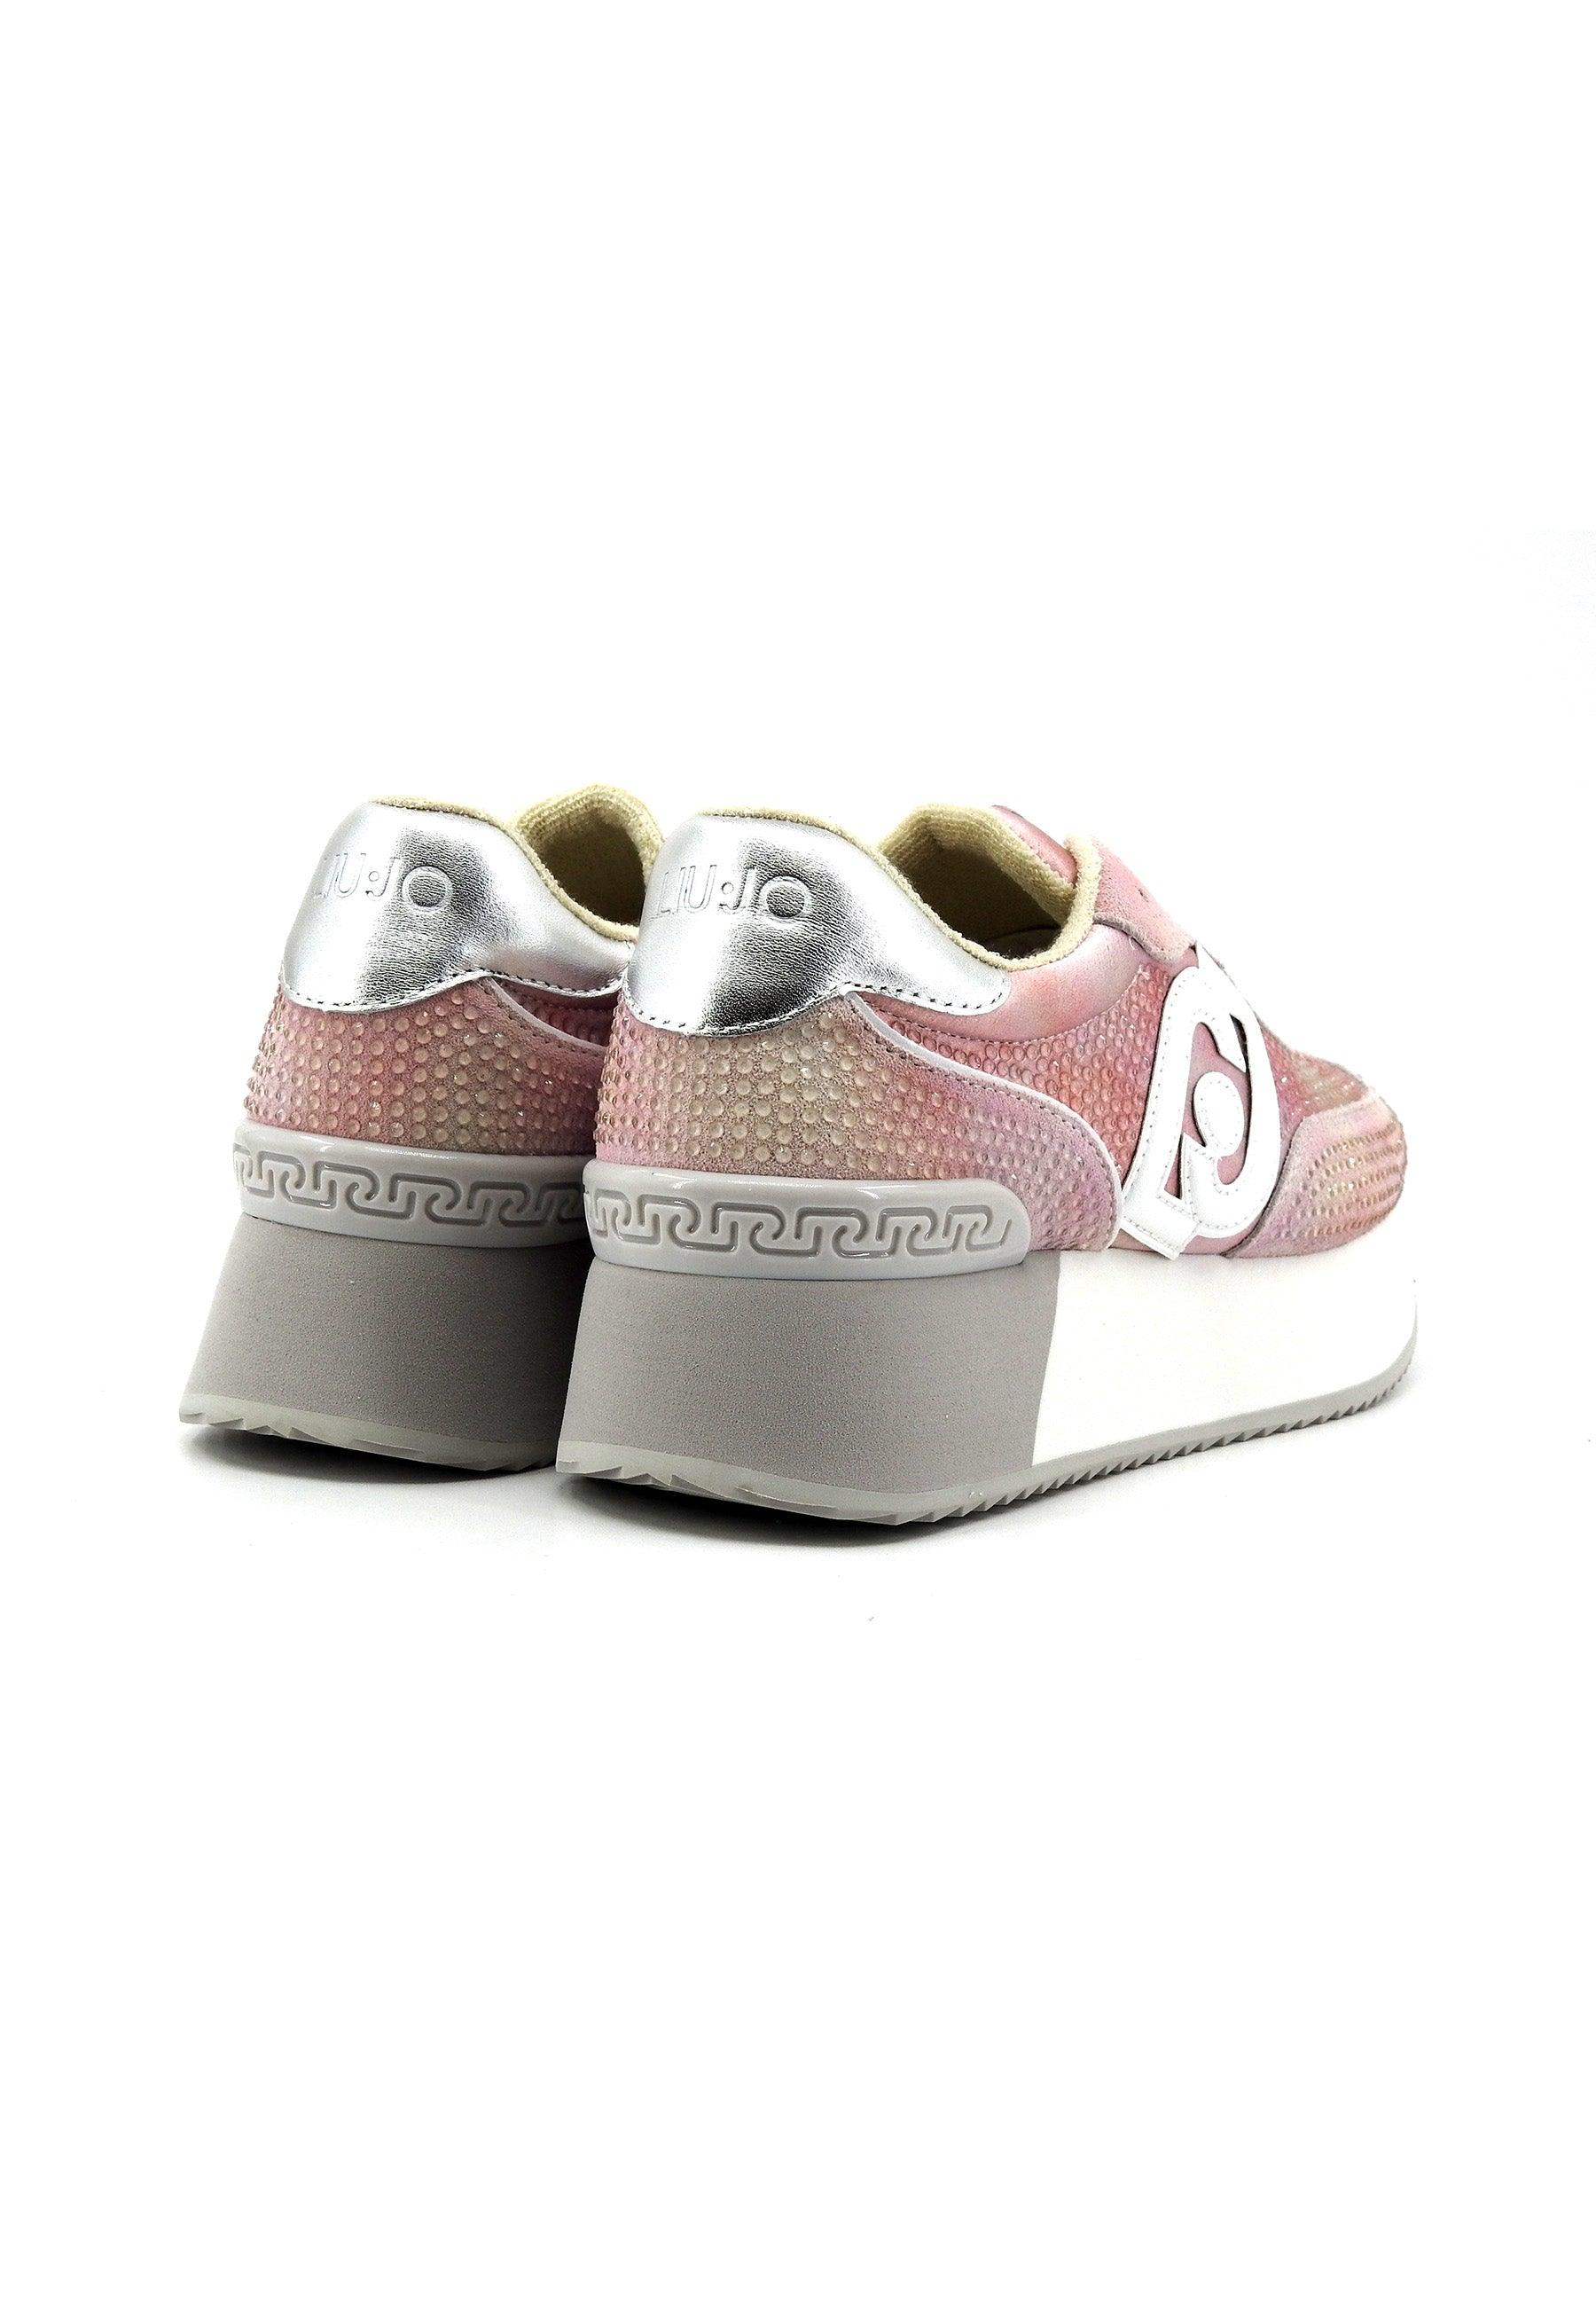 LIU JO Dreamy 02 Sneaker Donna White Pink BA4081PX485 - Sandrini Calzature e Abbigliamento